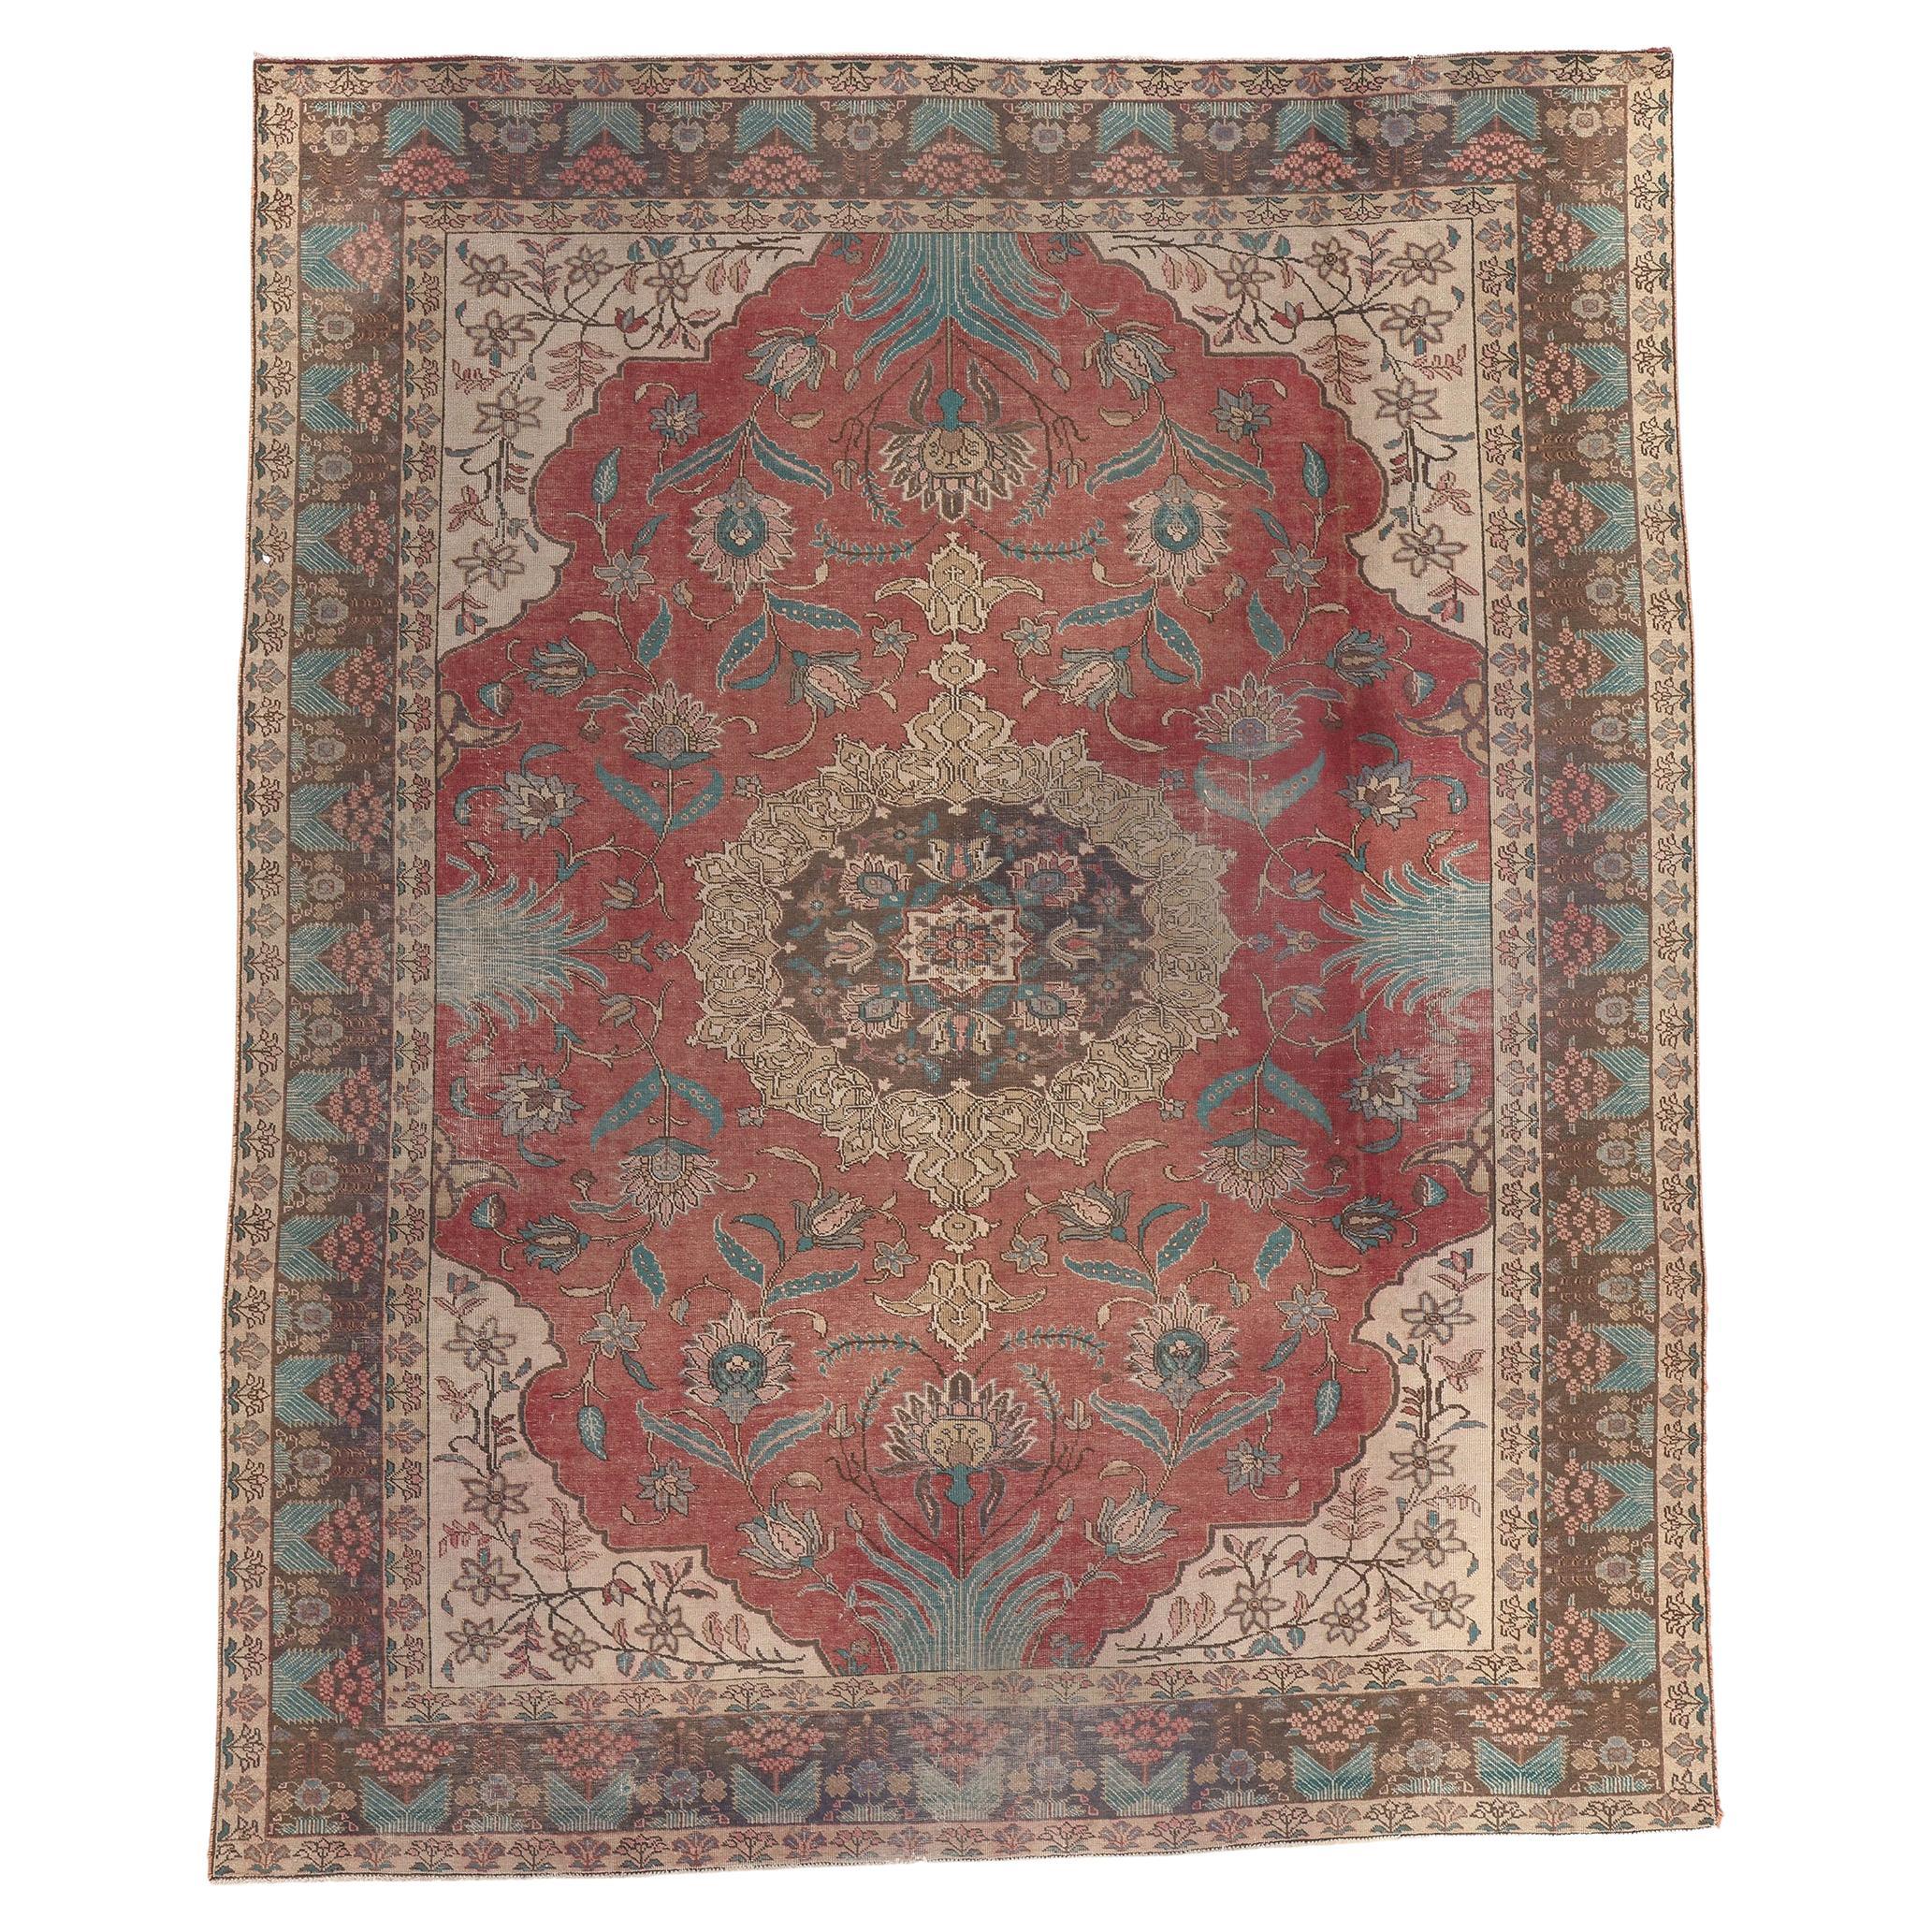 Persischer Tabriz-Teppich im Used-Look, handwerklicher Stil trifft auf rustikale Eleganz